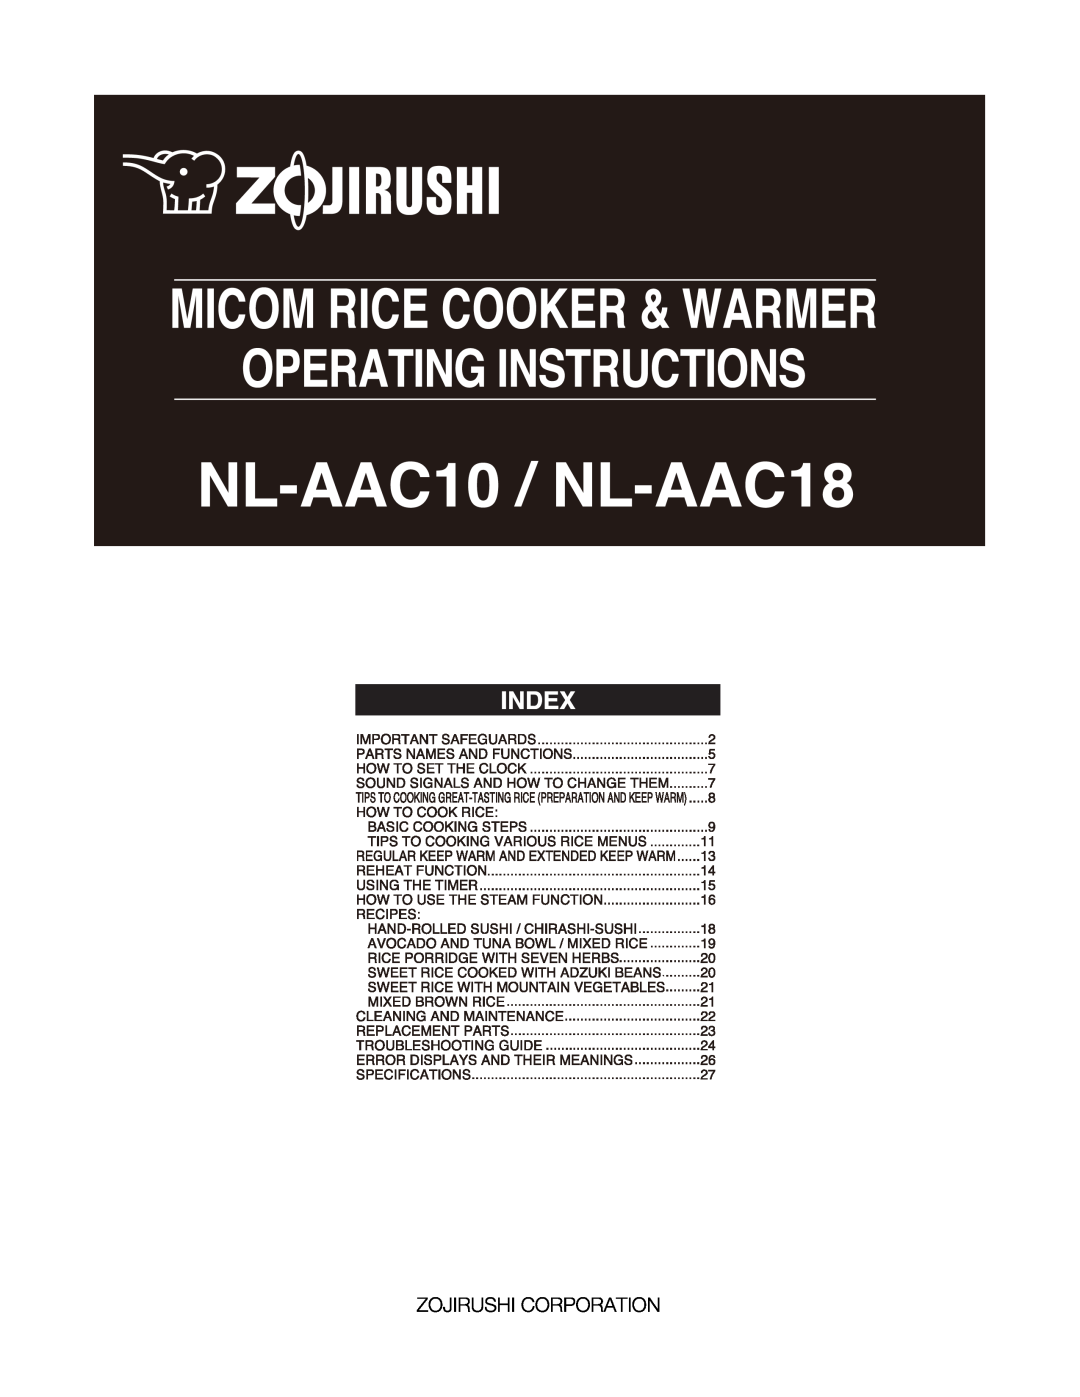 Zojirushi NL-AAC10, NL-AAC18 manual 